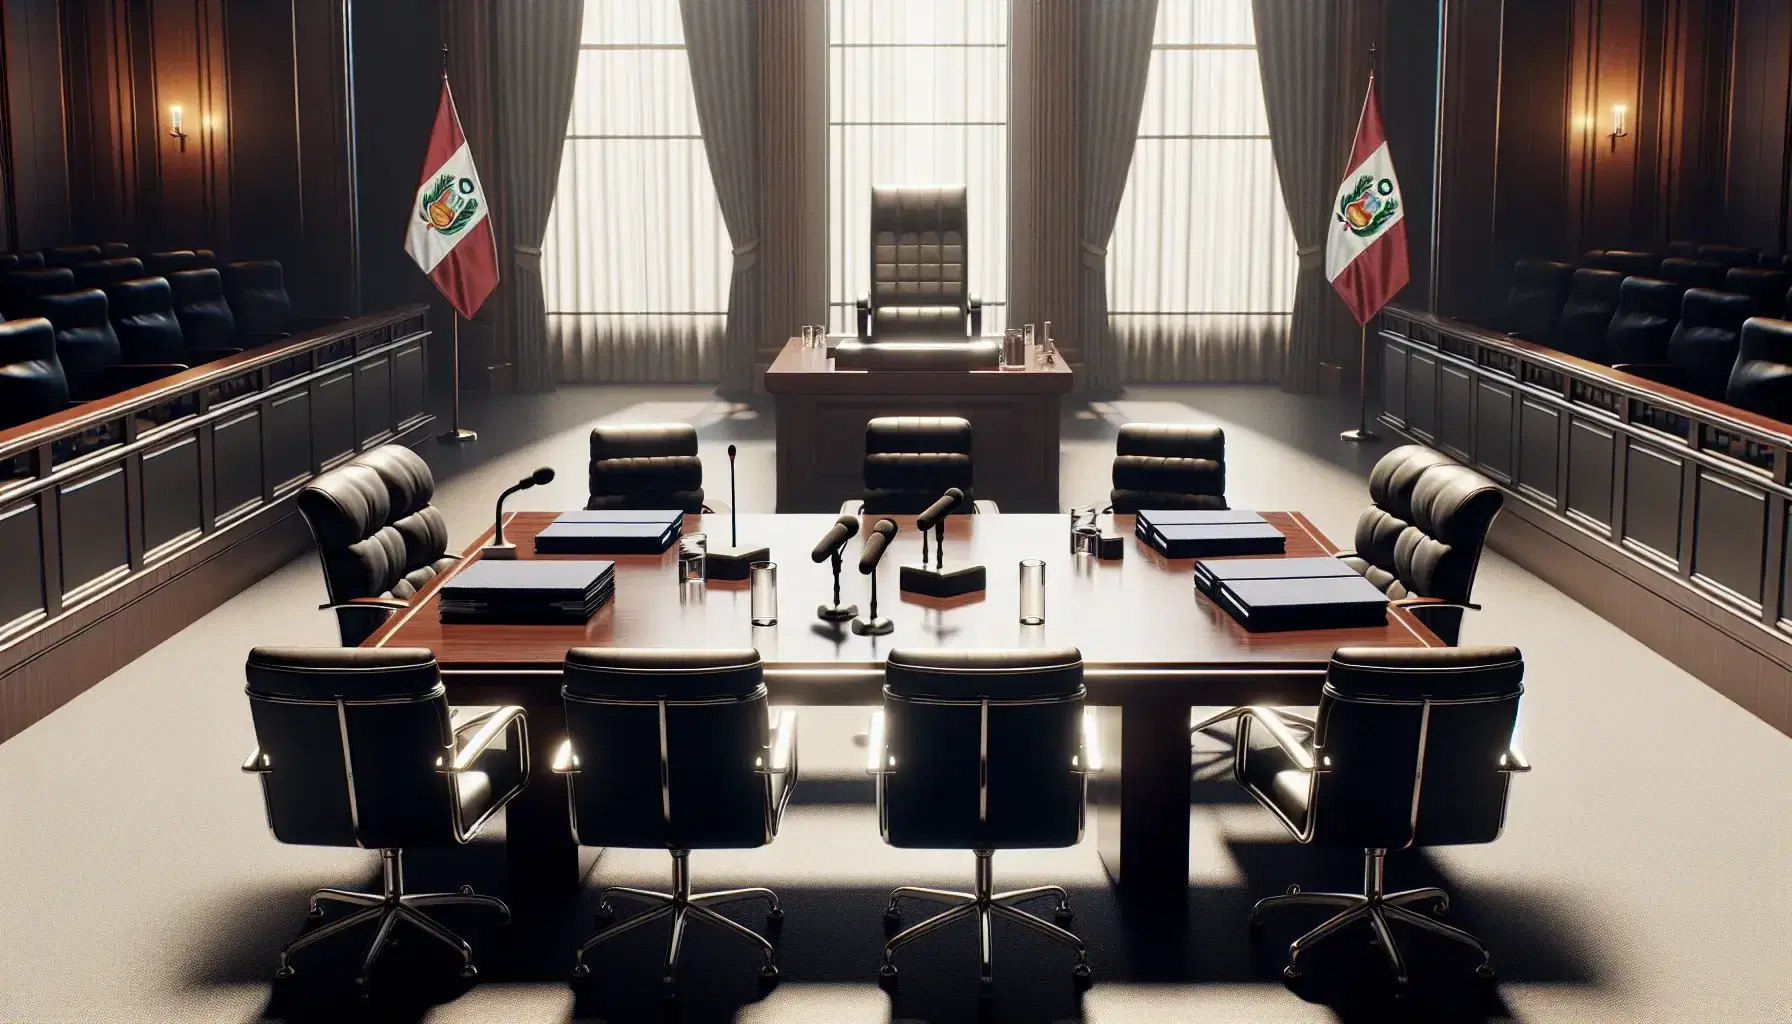 Sala de audiencias con mesa central rodeada de sillas negras, estrado del juez y ventana con cortinas blancas, bandera de Perú a la derecha y podio con micrófono al frente.